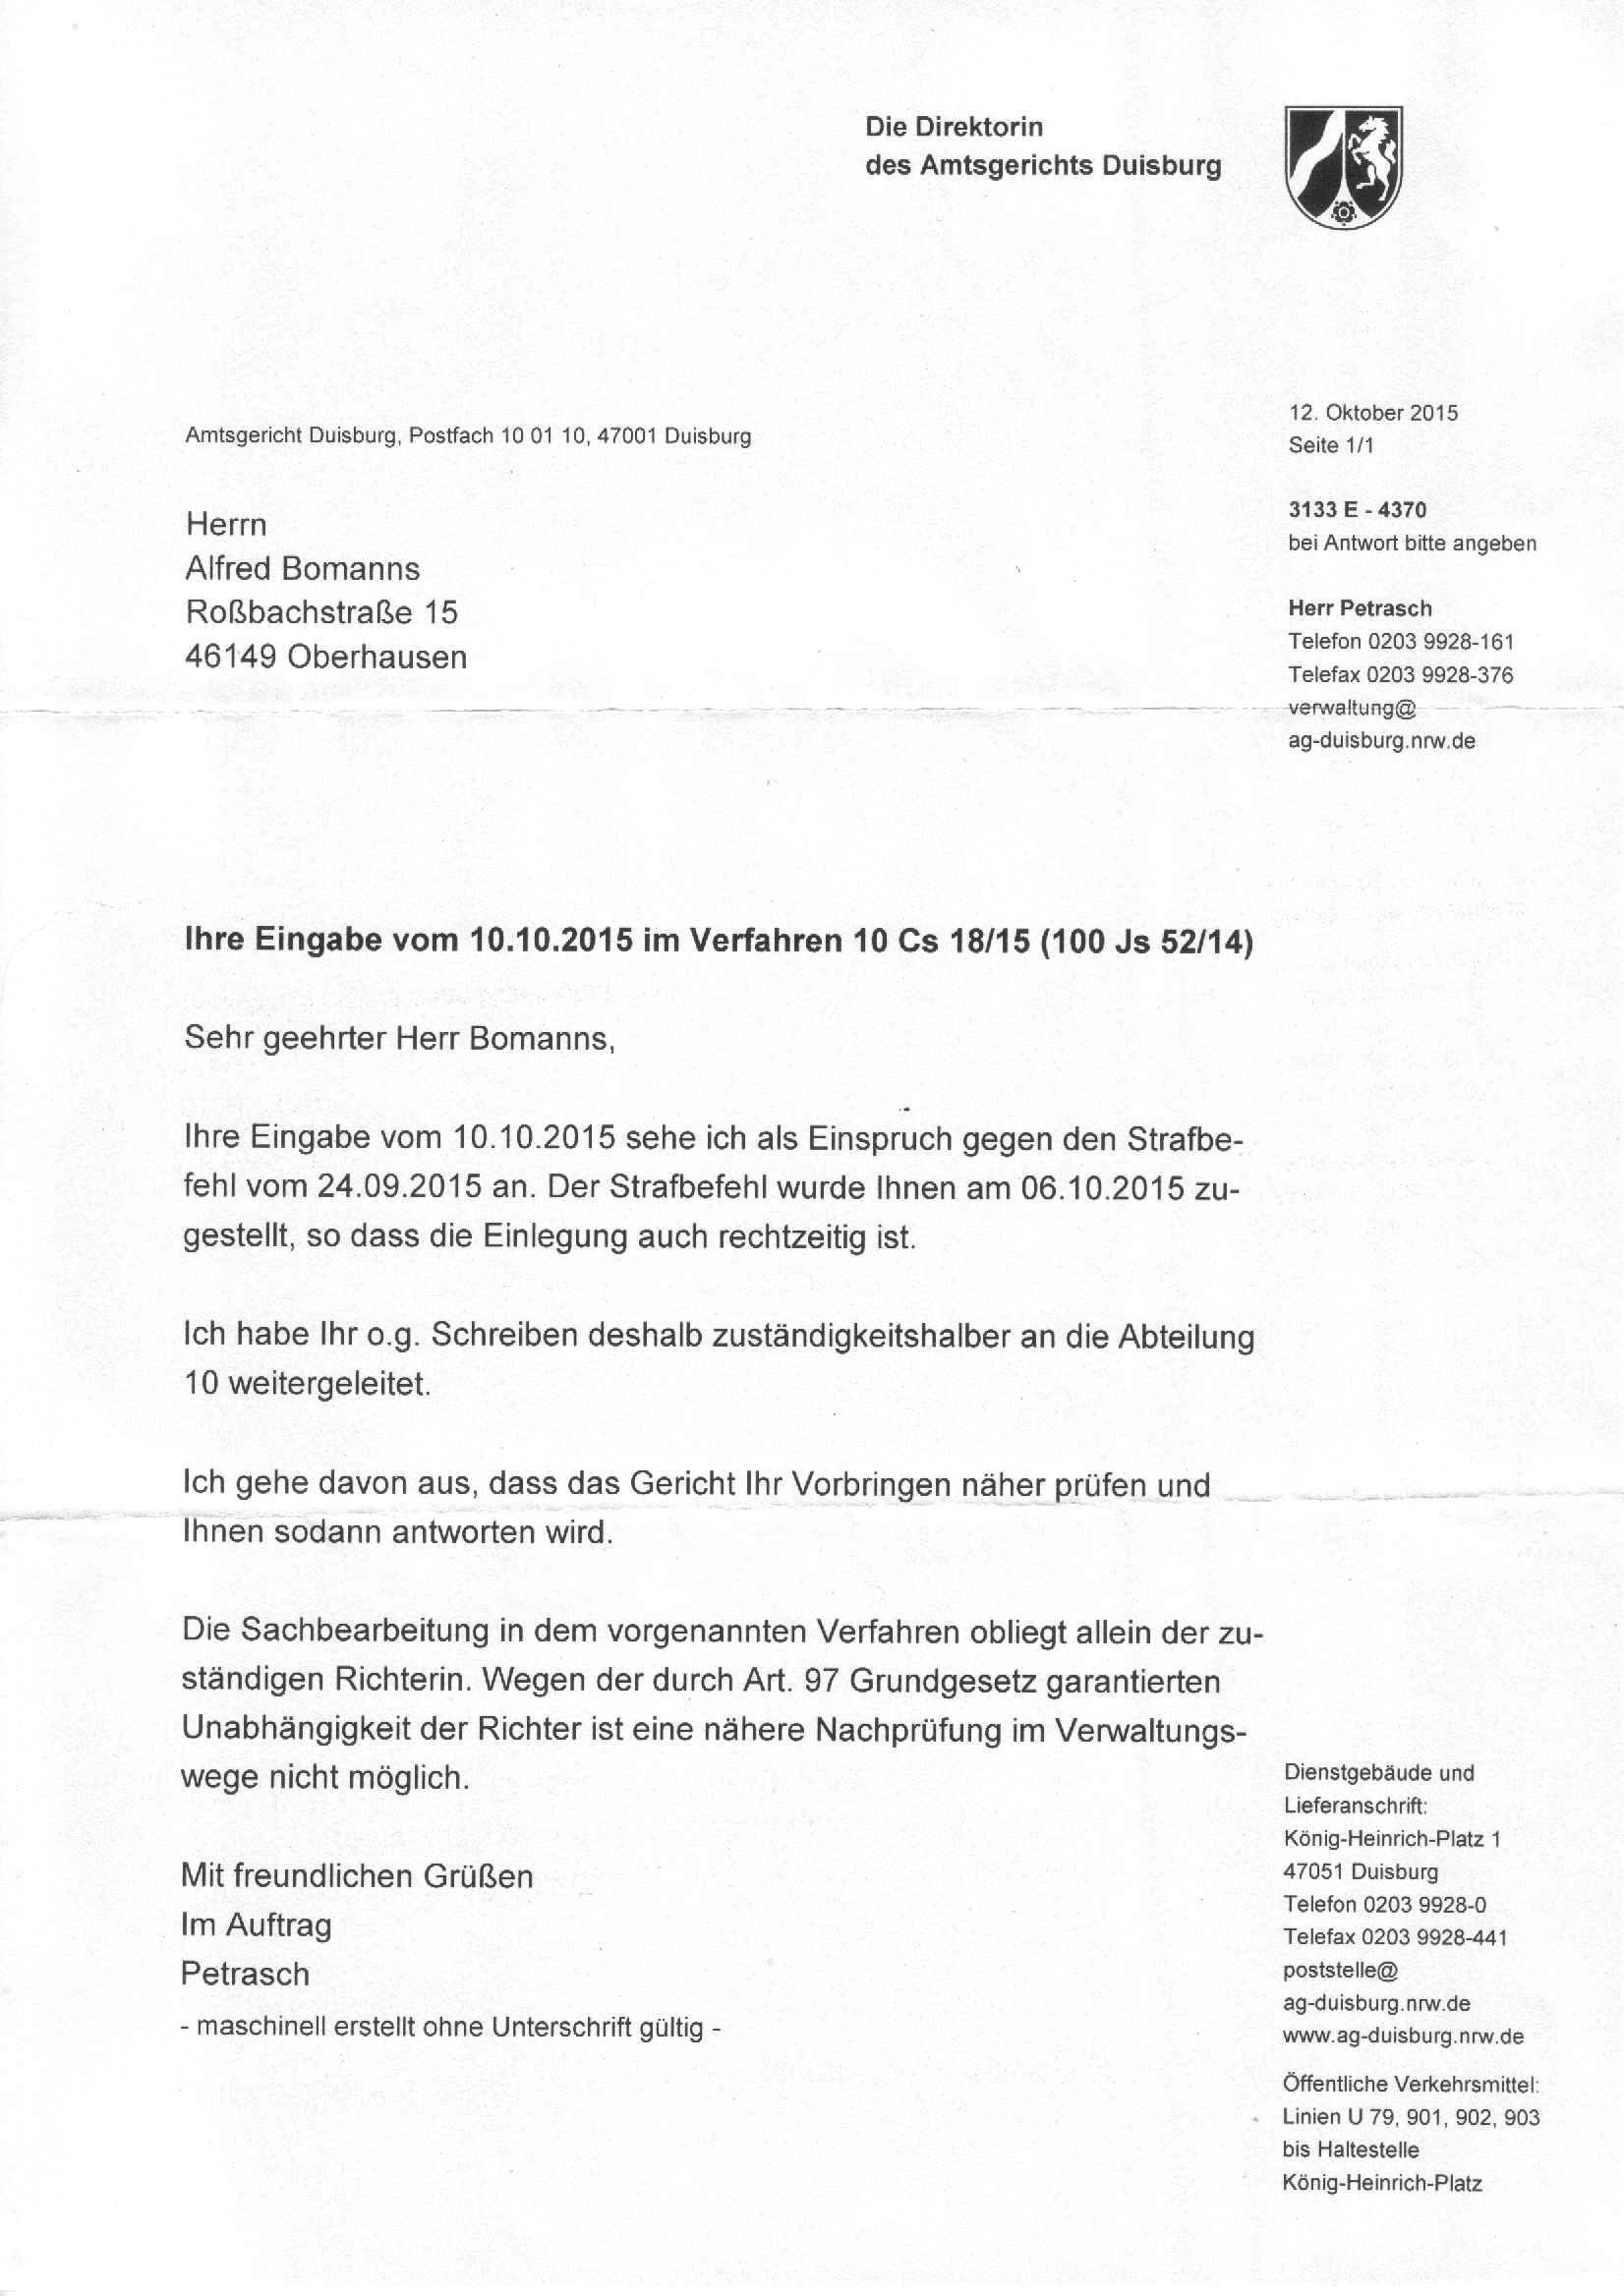 Eingangsbestätigung der Direktorin des Amtsgerichts Duisburg, Renate Nabbefeld-Kaiser, vom 12.10.2015